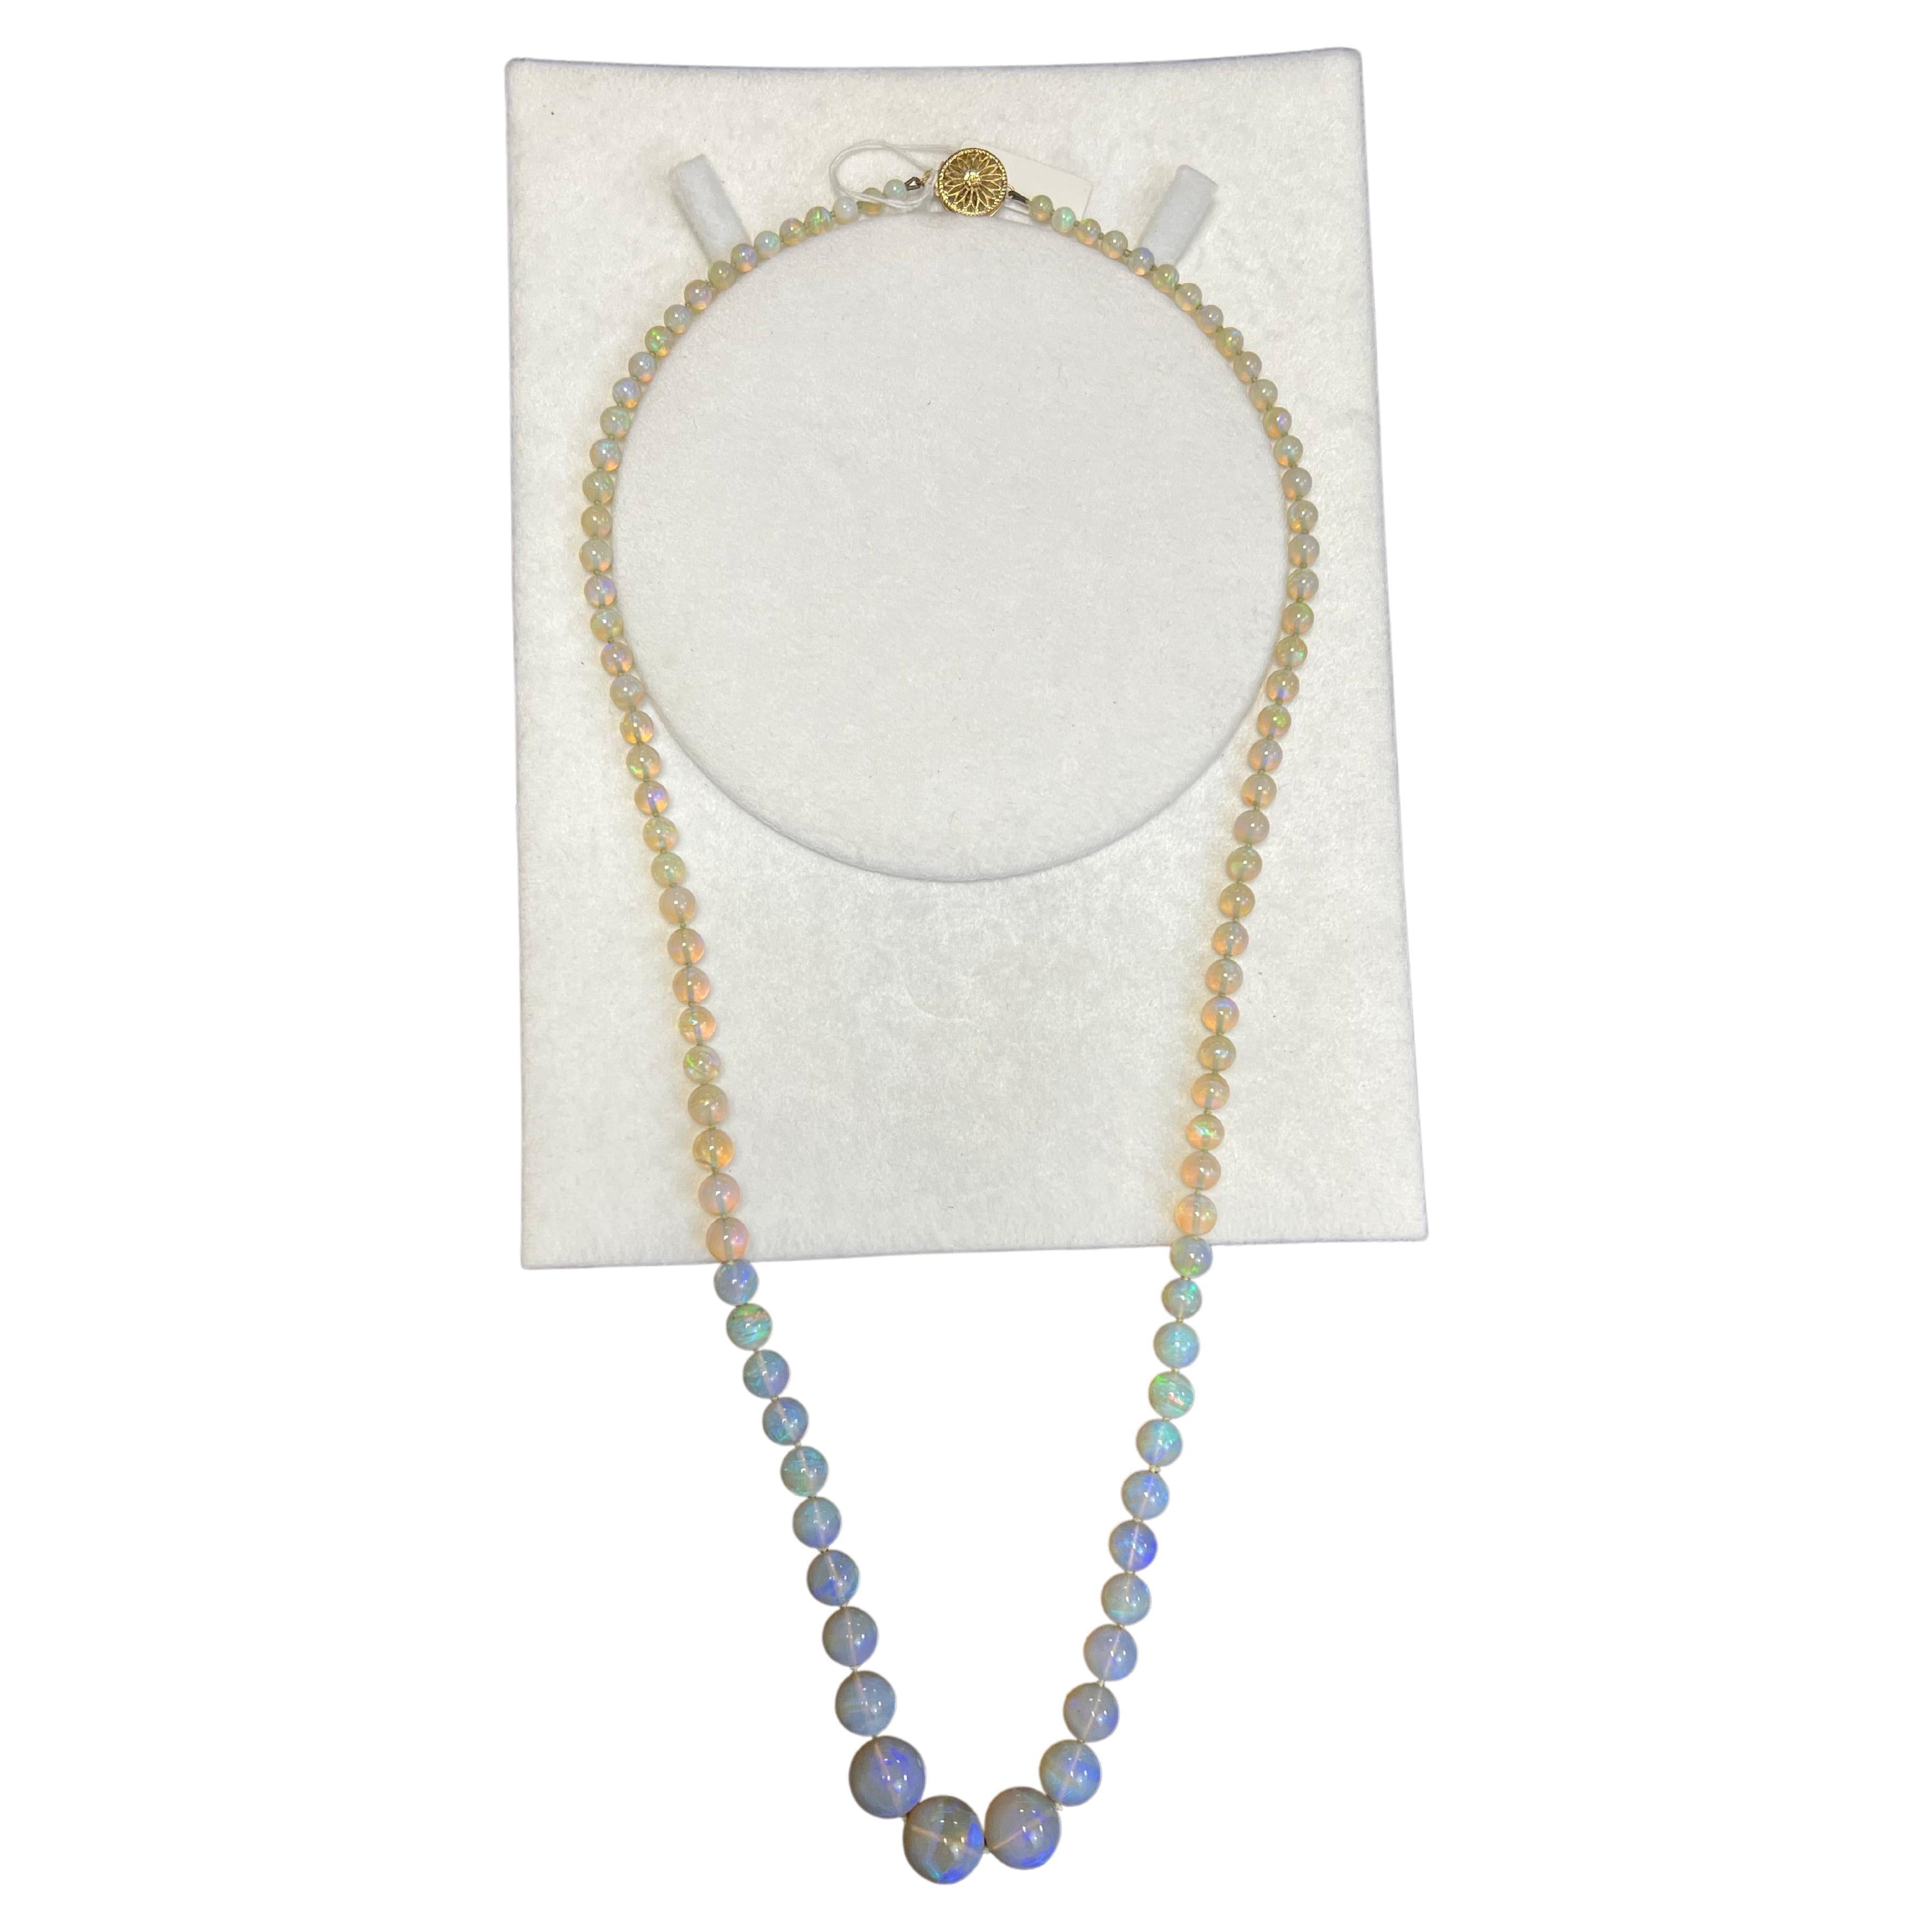 Lady's Crystal Opal abgestufte Perlen Halskette mit 14K Gelbgold 